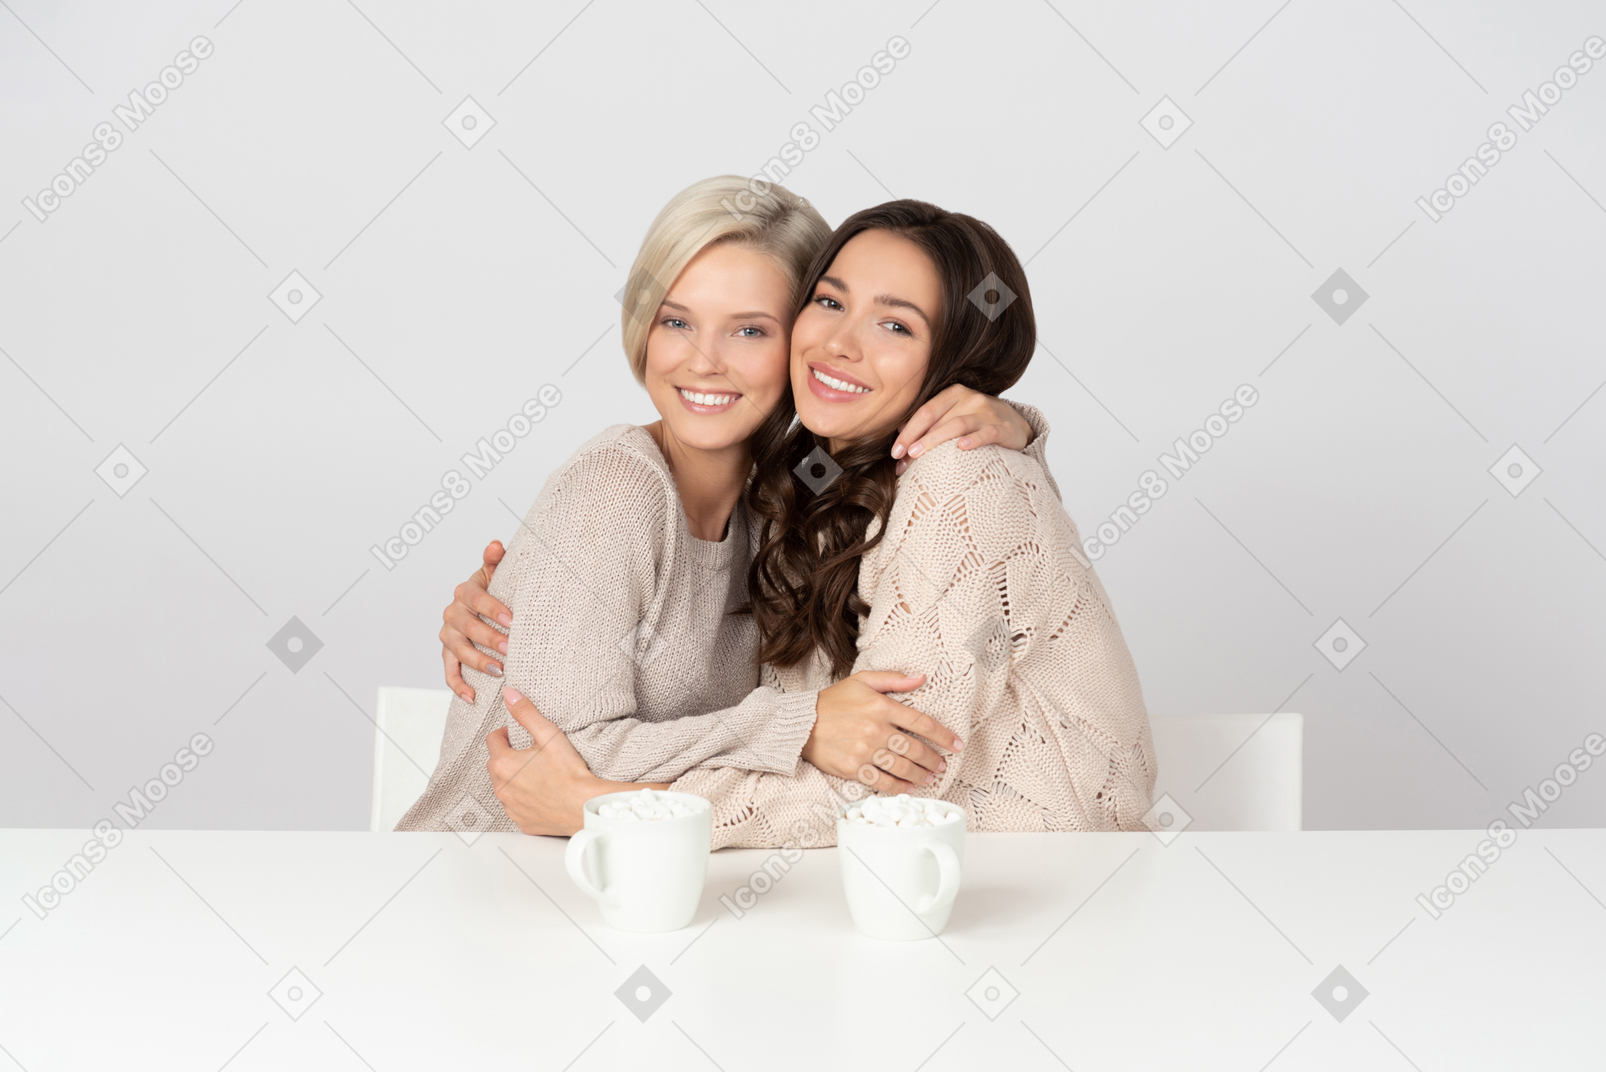 Молодые женщины обнимаются и пьют кофе